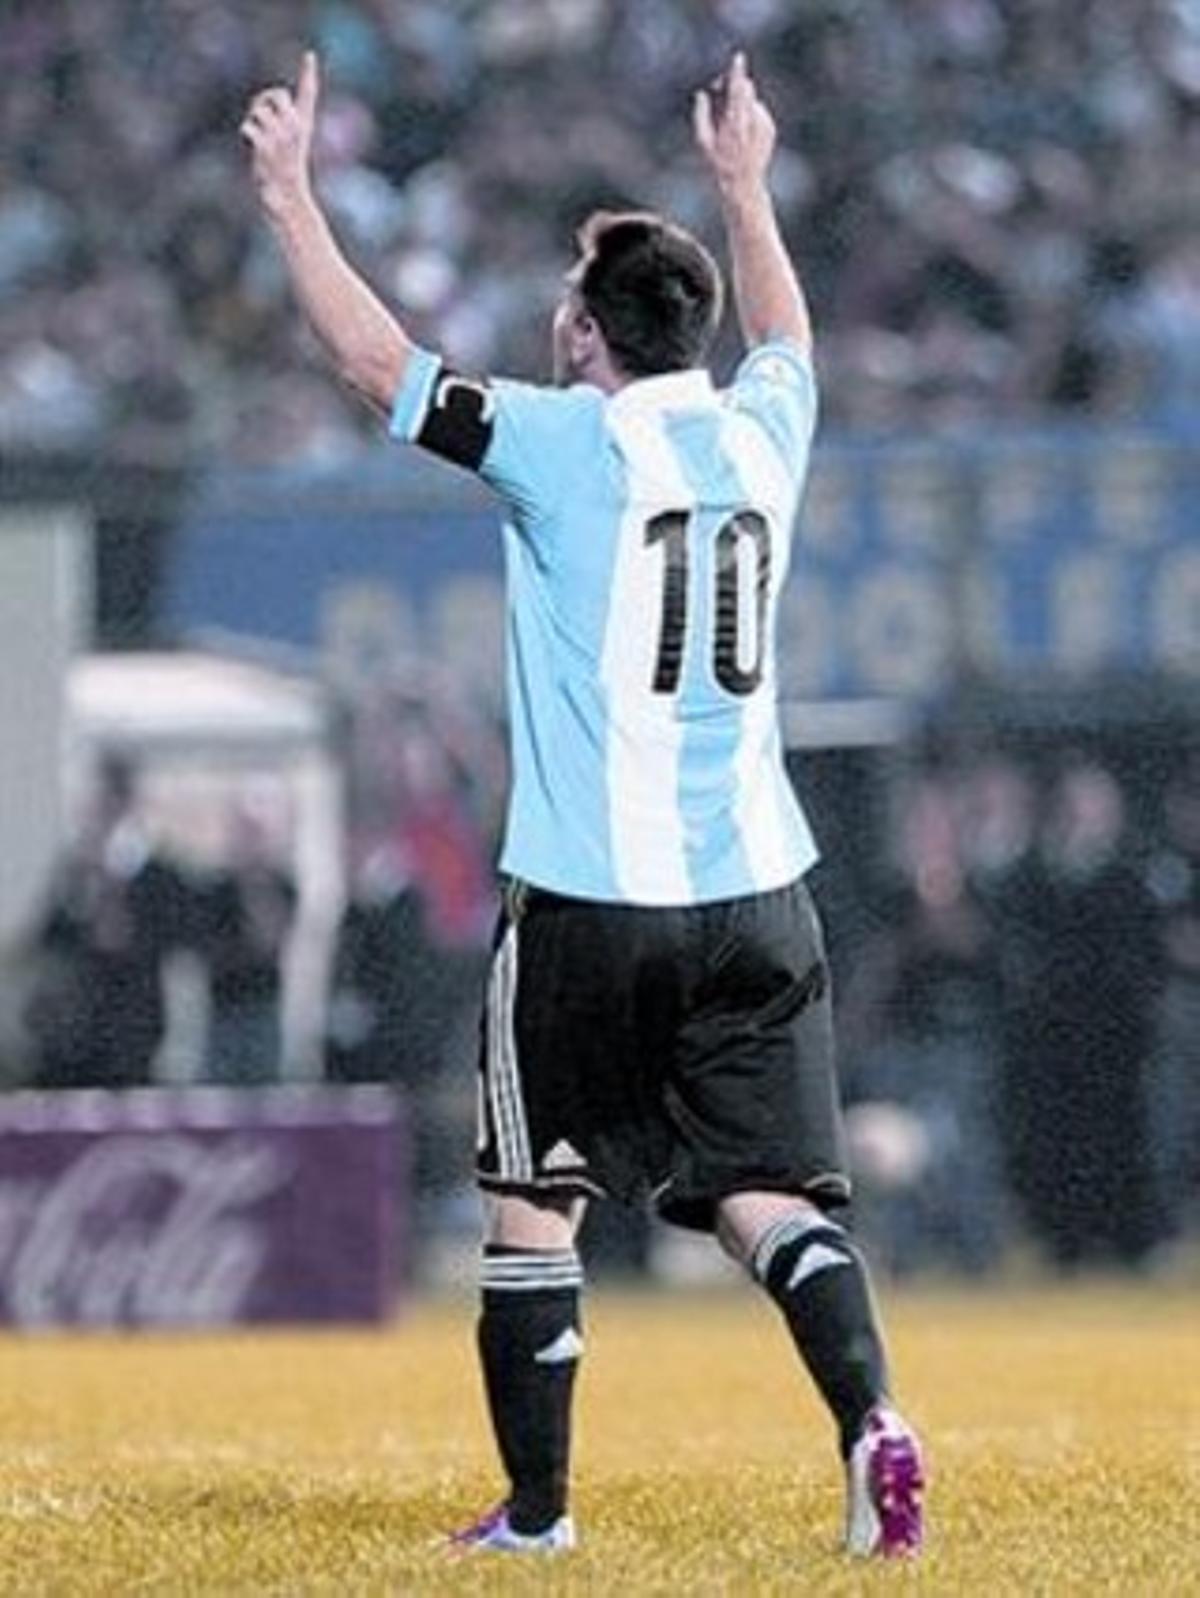 TRES PROTAGONISTES MOLT ARGENTINS. Aquí tenim el Diego Simeone, campió amb el River Plate, molt seriós. Tot al contrari que el millor i més feliç dels Tata Martino coneguts, quan va triomfar amb el Newell’s. I, completant el repte argentí d’avui del Calderón, Messi, el 10 de l’albiceleste.